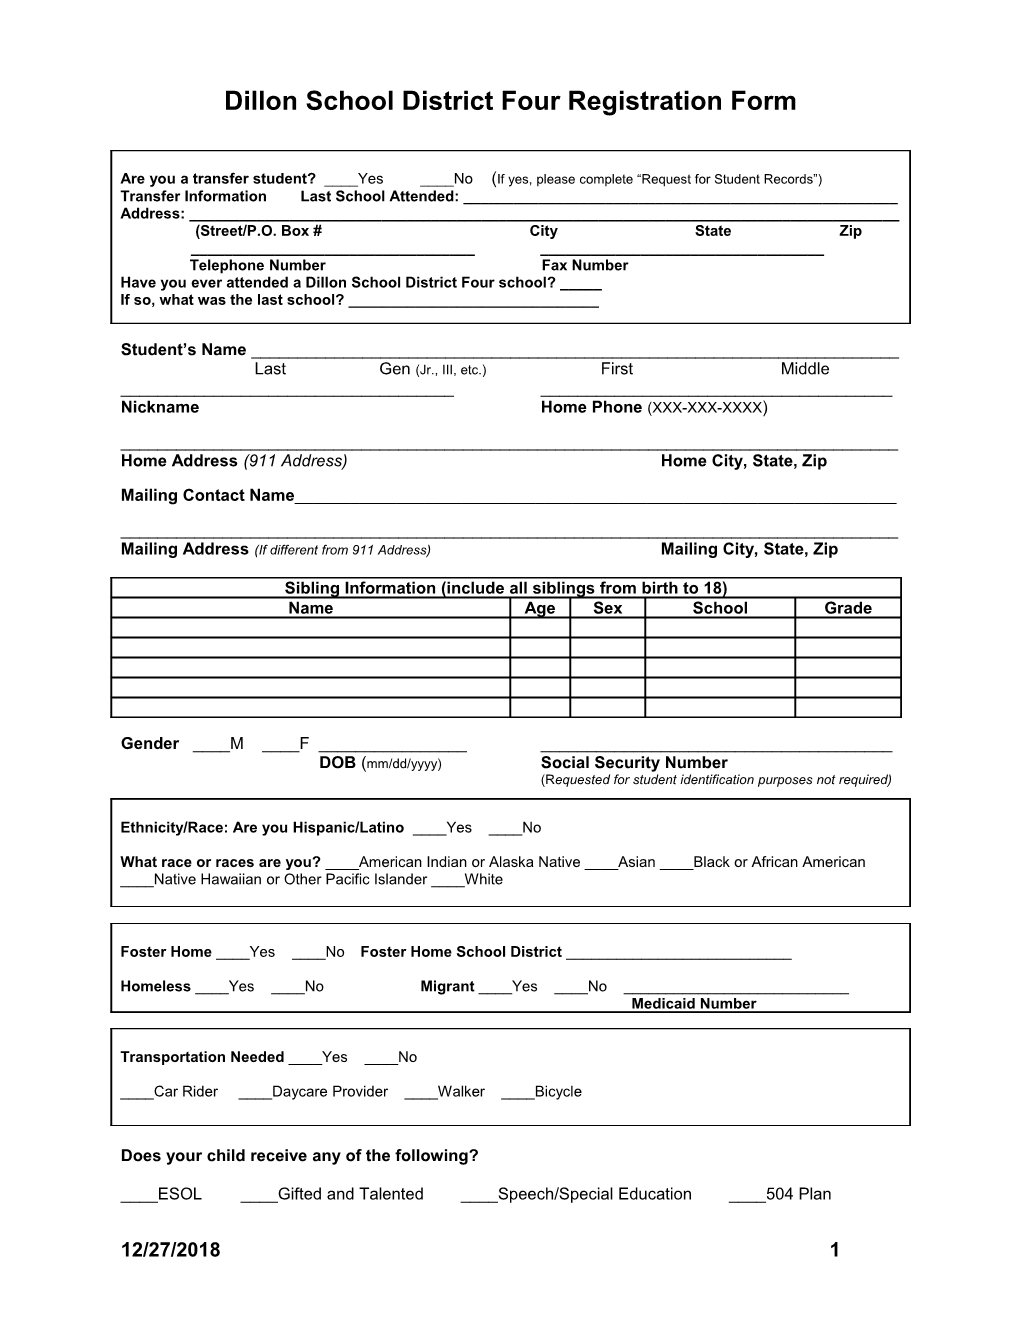 Dillon School District Four Registration Form